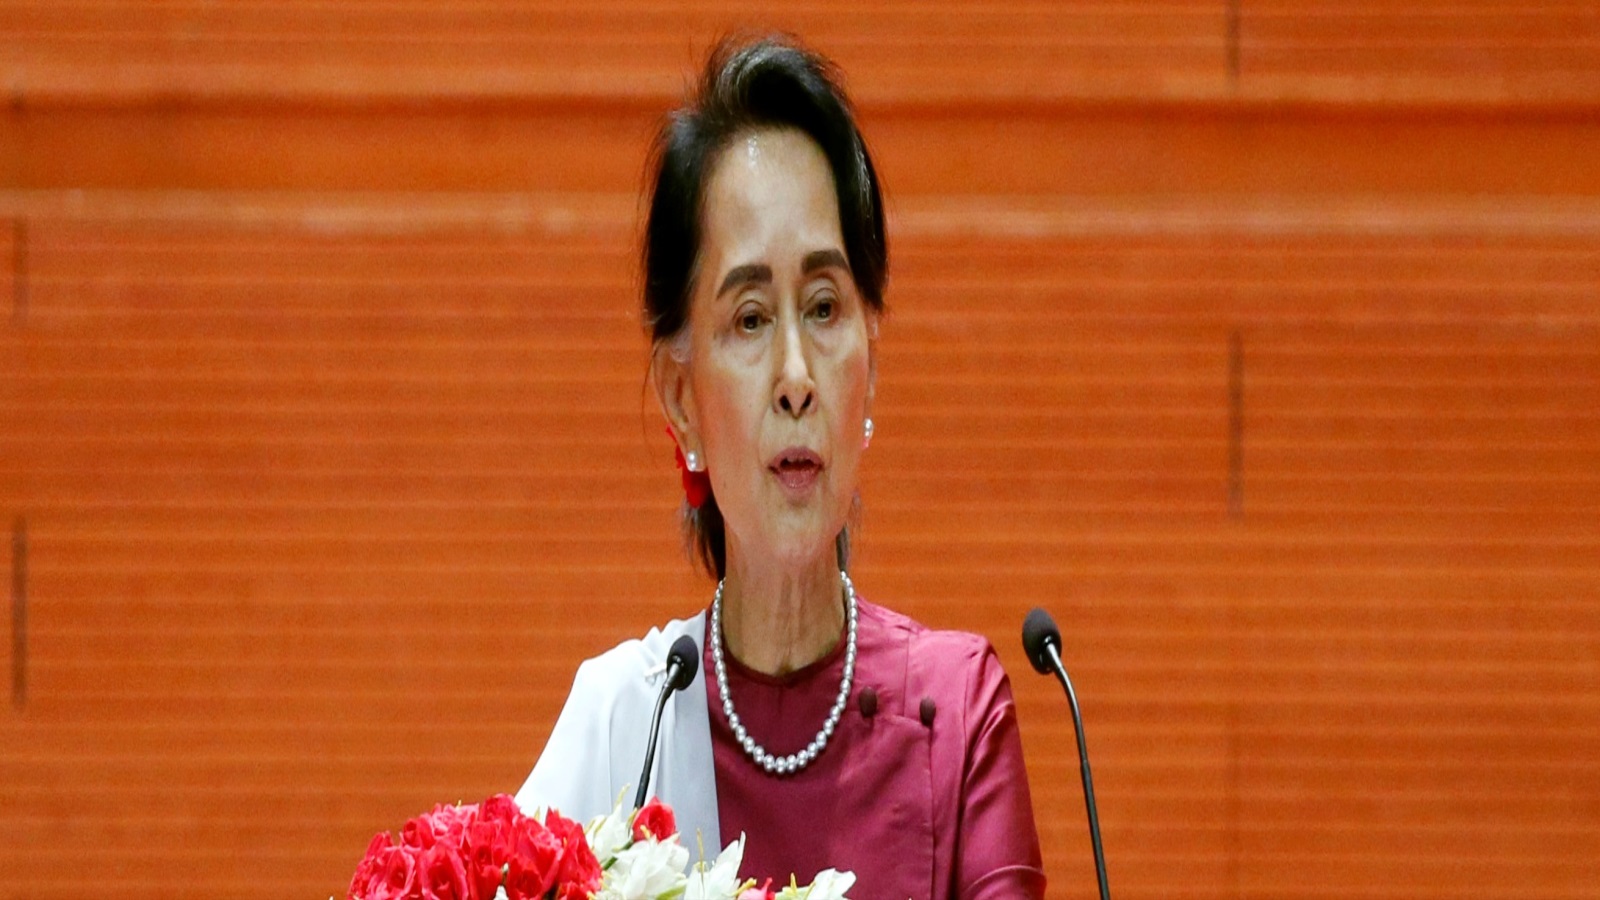 لا يزال التحول الديمقراطي في ميانمار هشا، في حين تتنافس قضايا مثل العلاقات المدنية العسكرية، والفقر، والنمو الاقتصادي، والحوكمة على انتزاع الاهتمام